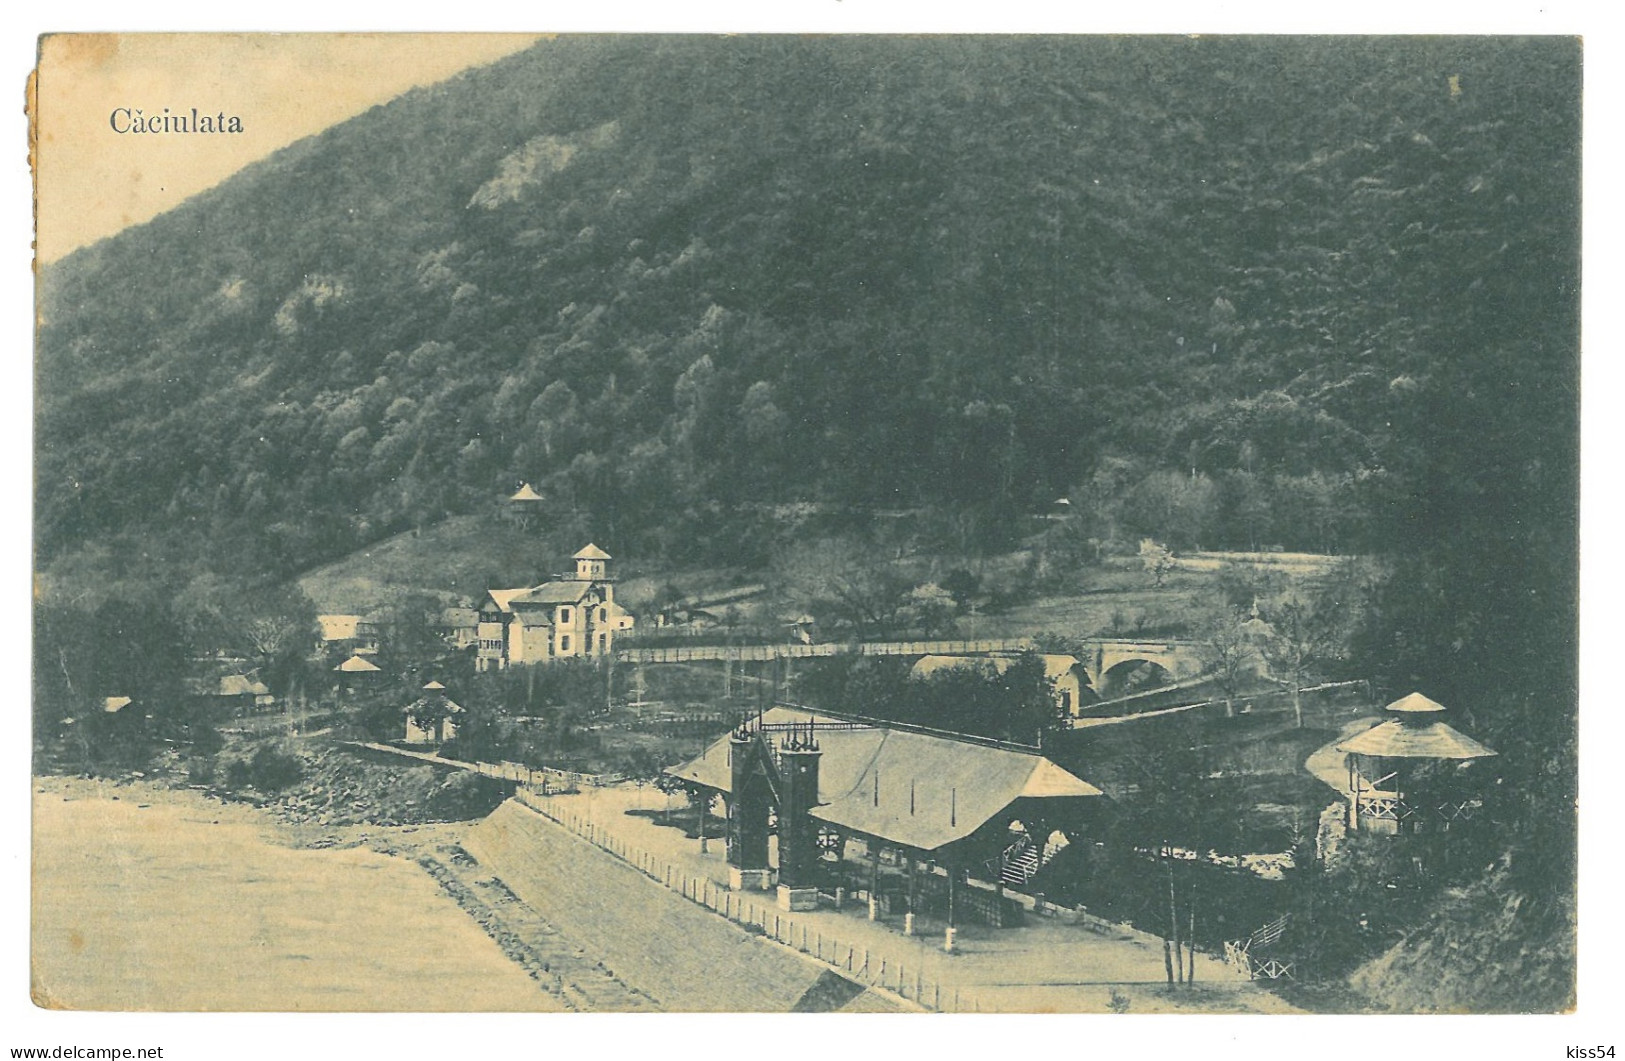 RO 06 - 16269 CACIULATA, Valcea, Panorama, Romania - Old Postcard - Used - 1908 - Roumanie